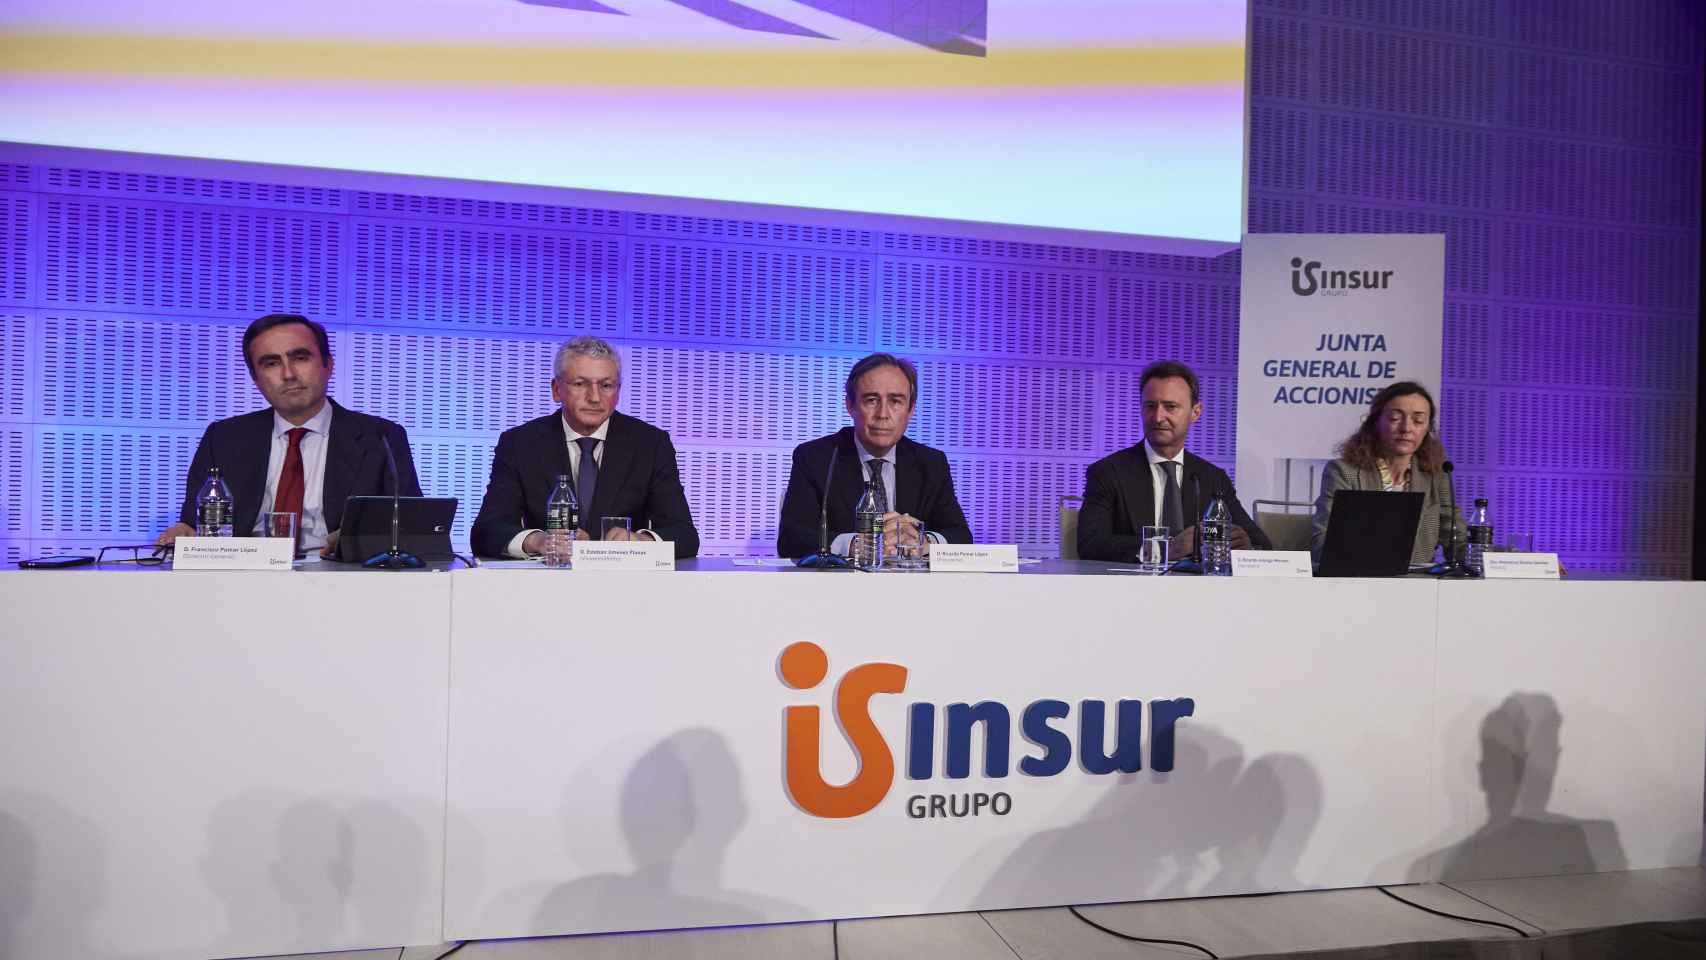 Ricardo Pumar preside la mesa de la junta de accionistas del Grupo Insur.